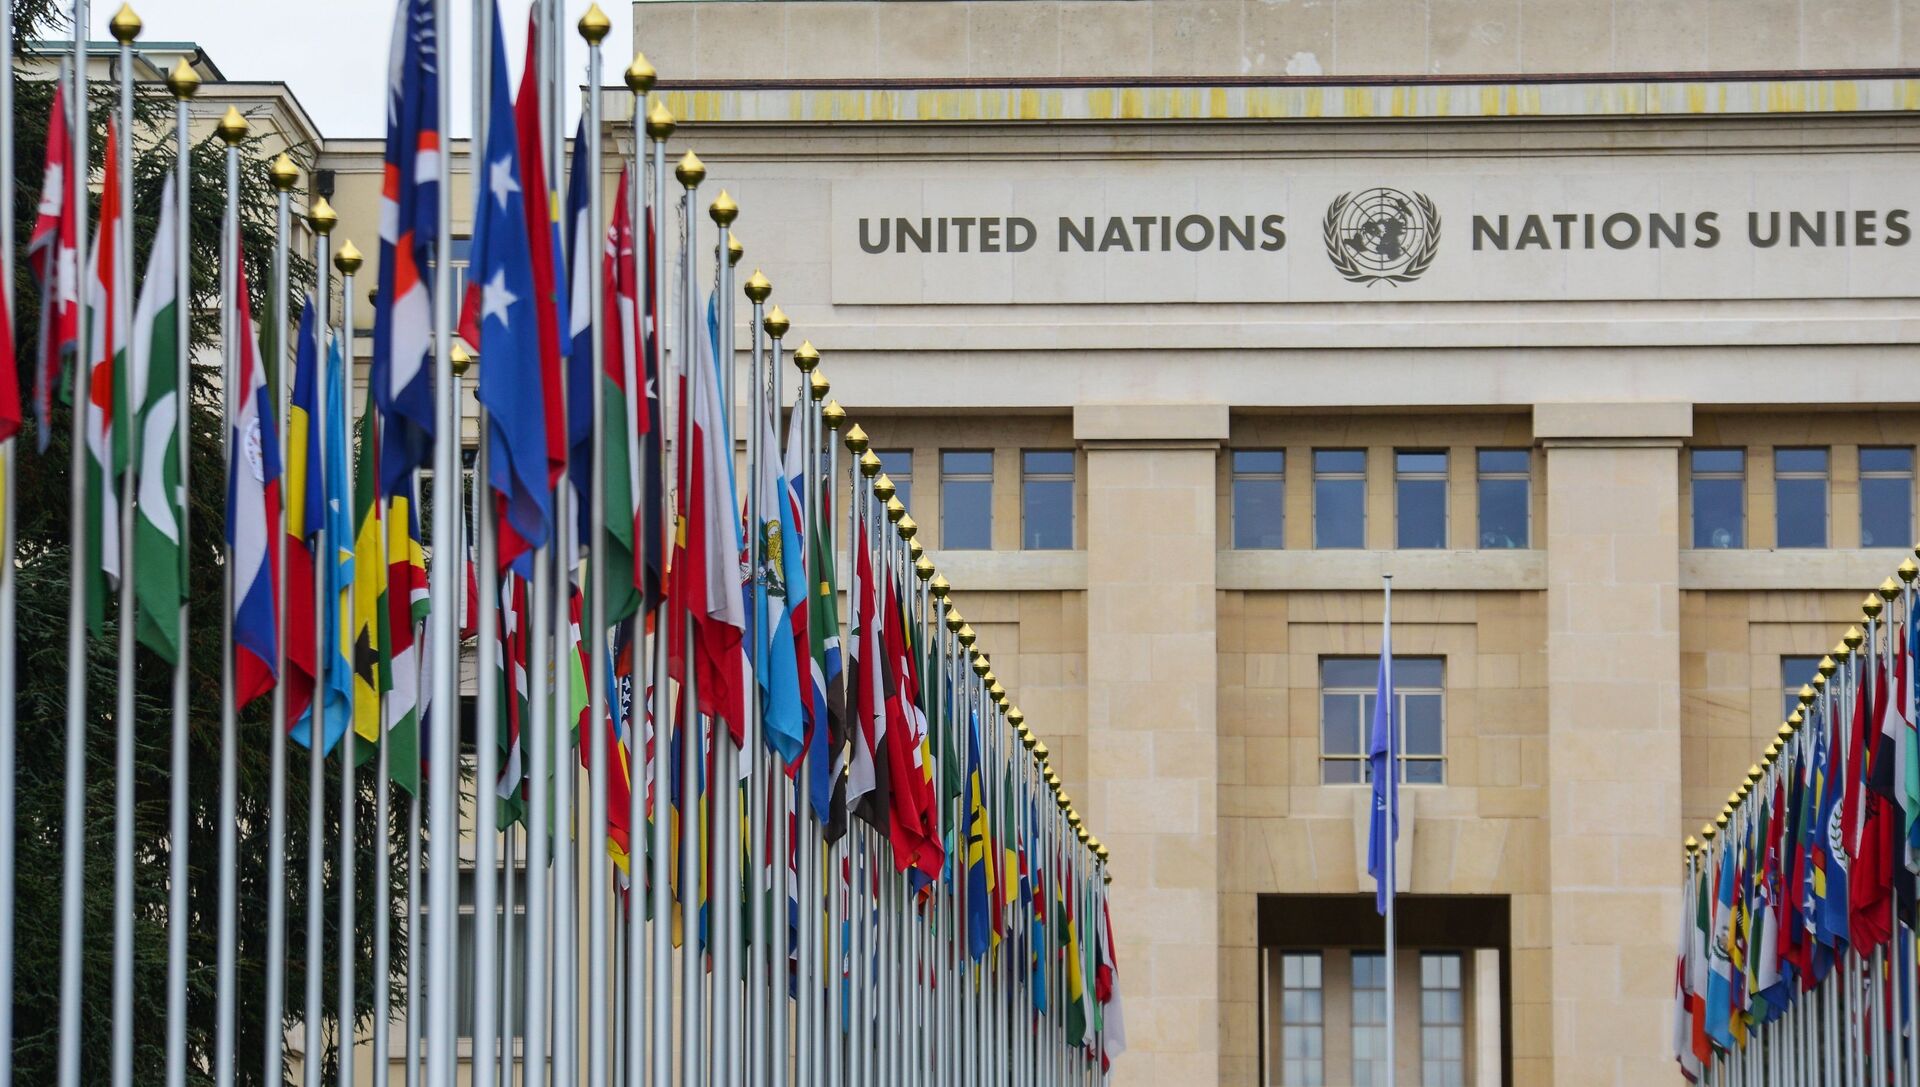 Аллея флагов возле здания Организации Объединённых Наций (ООН) в Женеве - РИА Новости, 1920, 21.09.2020